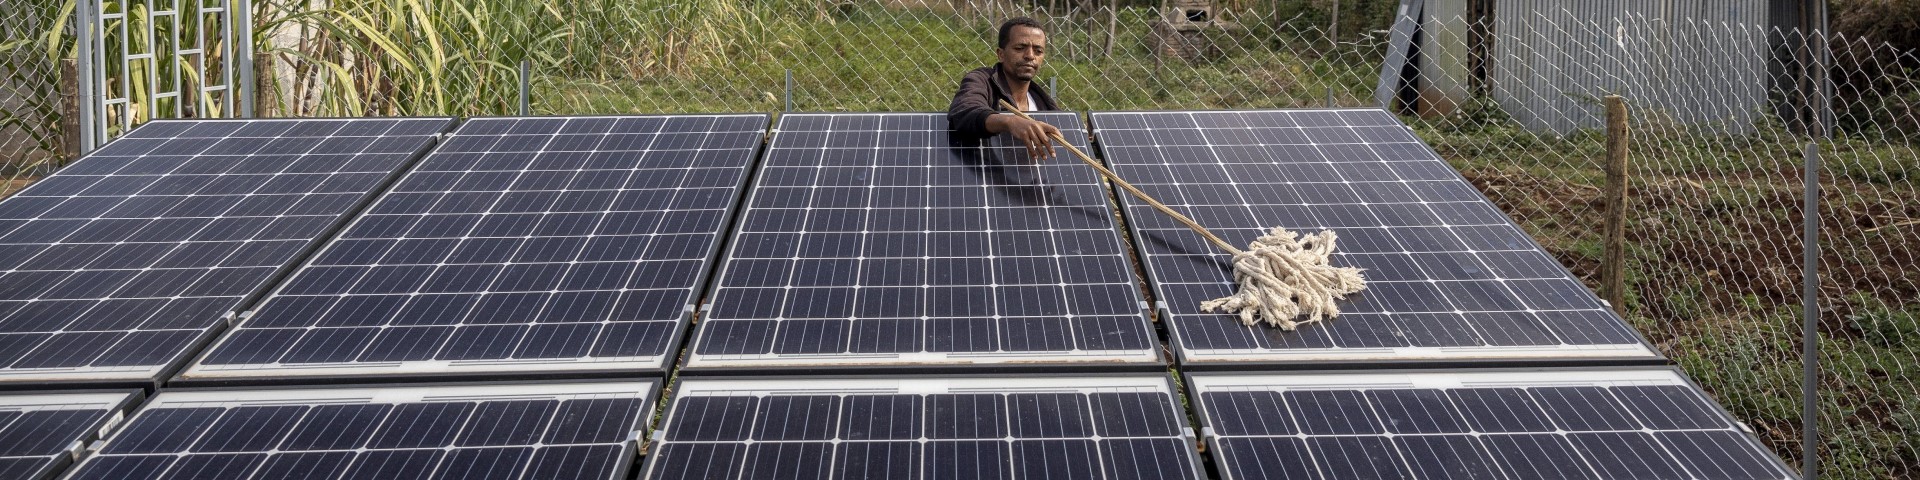 Ein Mann befreit die Solarpaneele einer Gesundheitsstation in Äthiopien von Staub. © GIZ